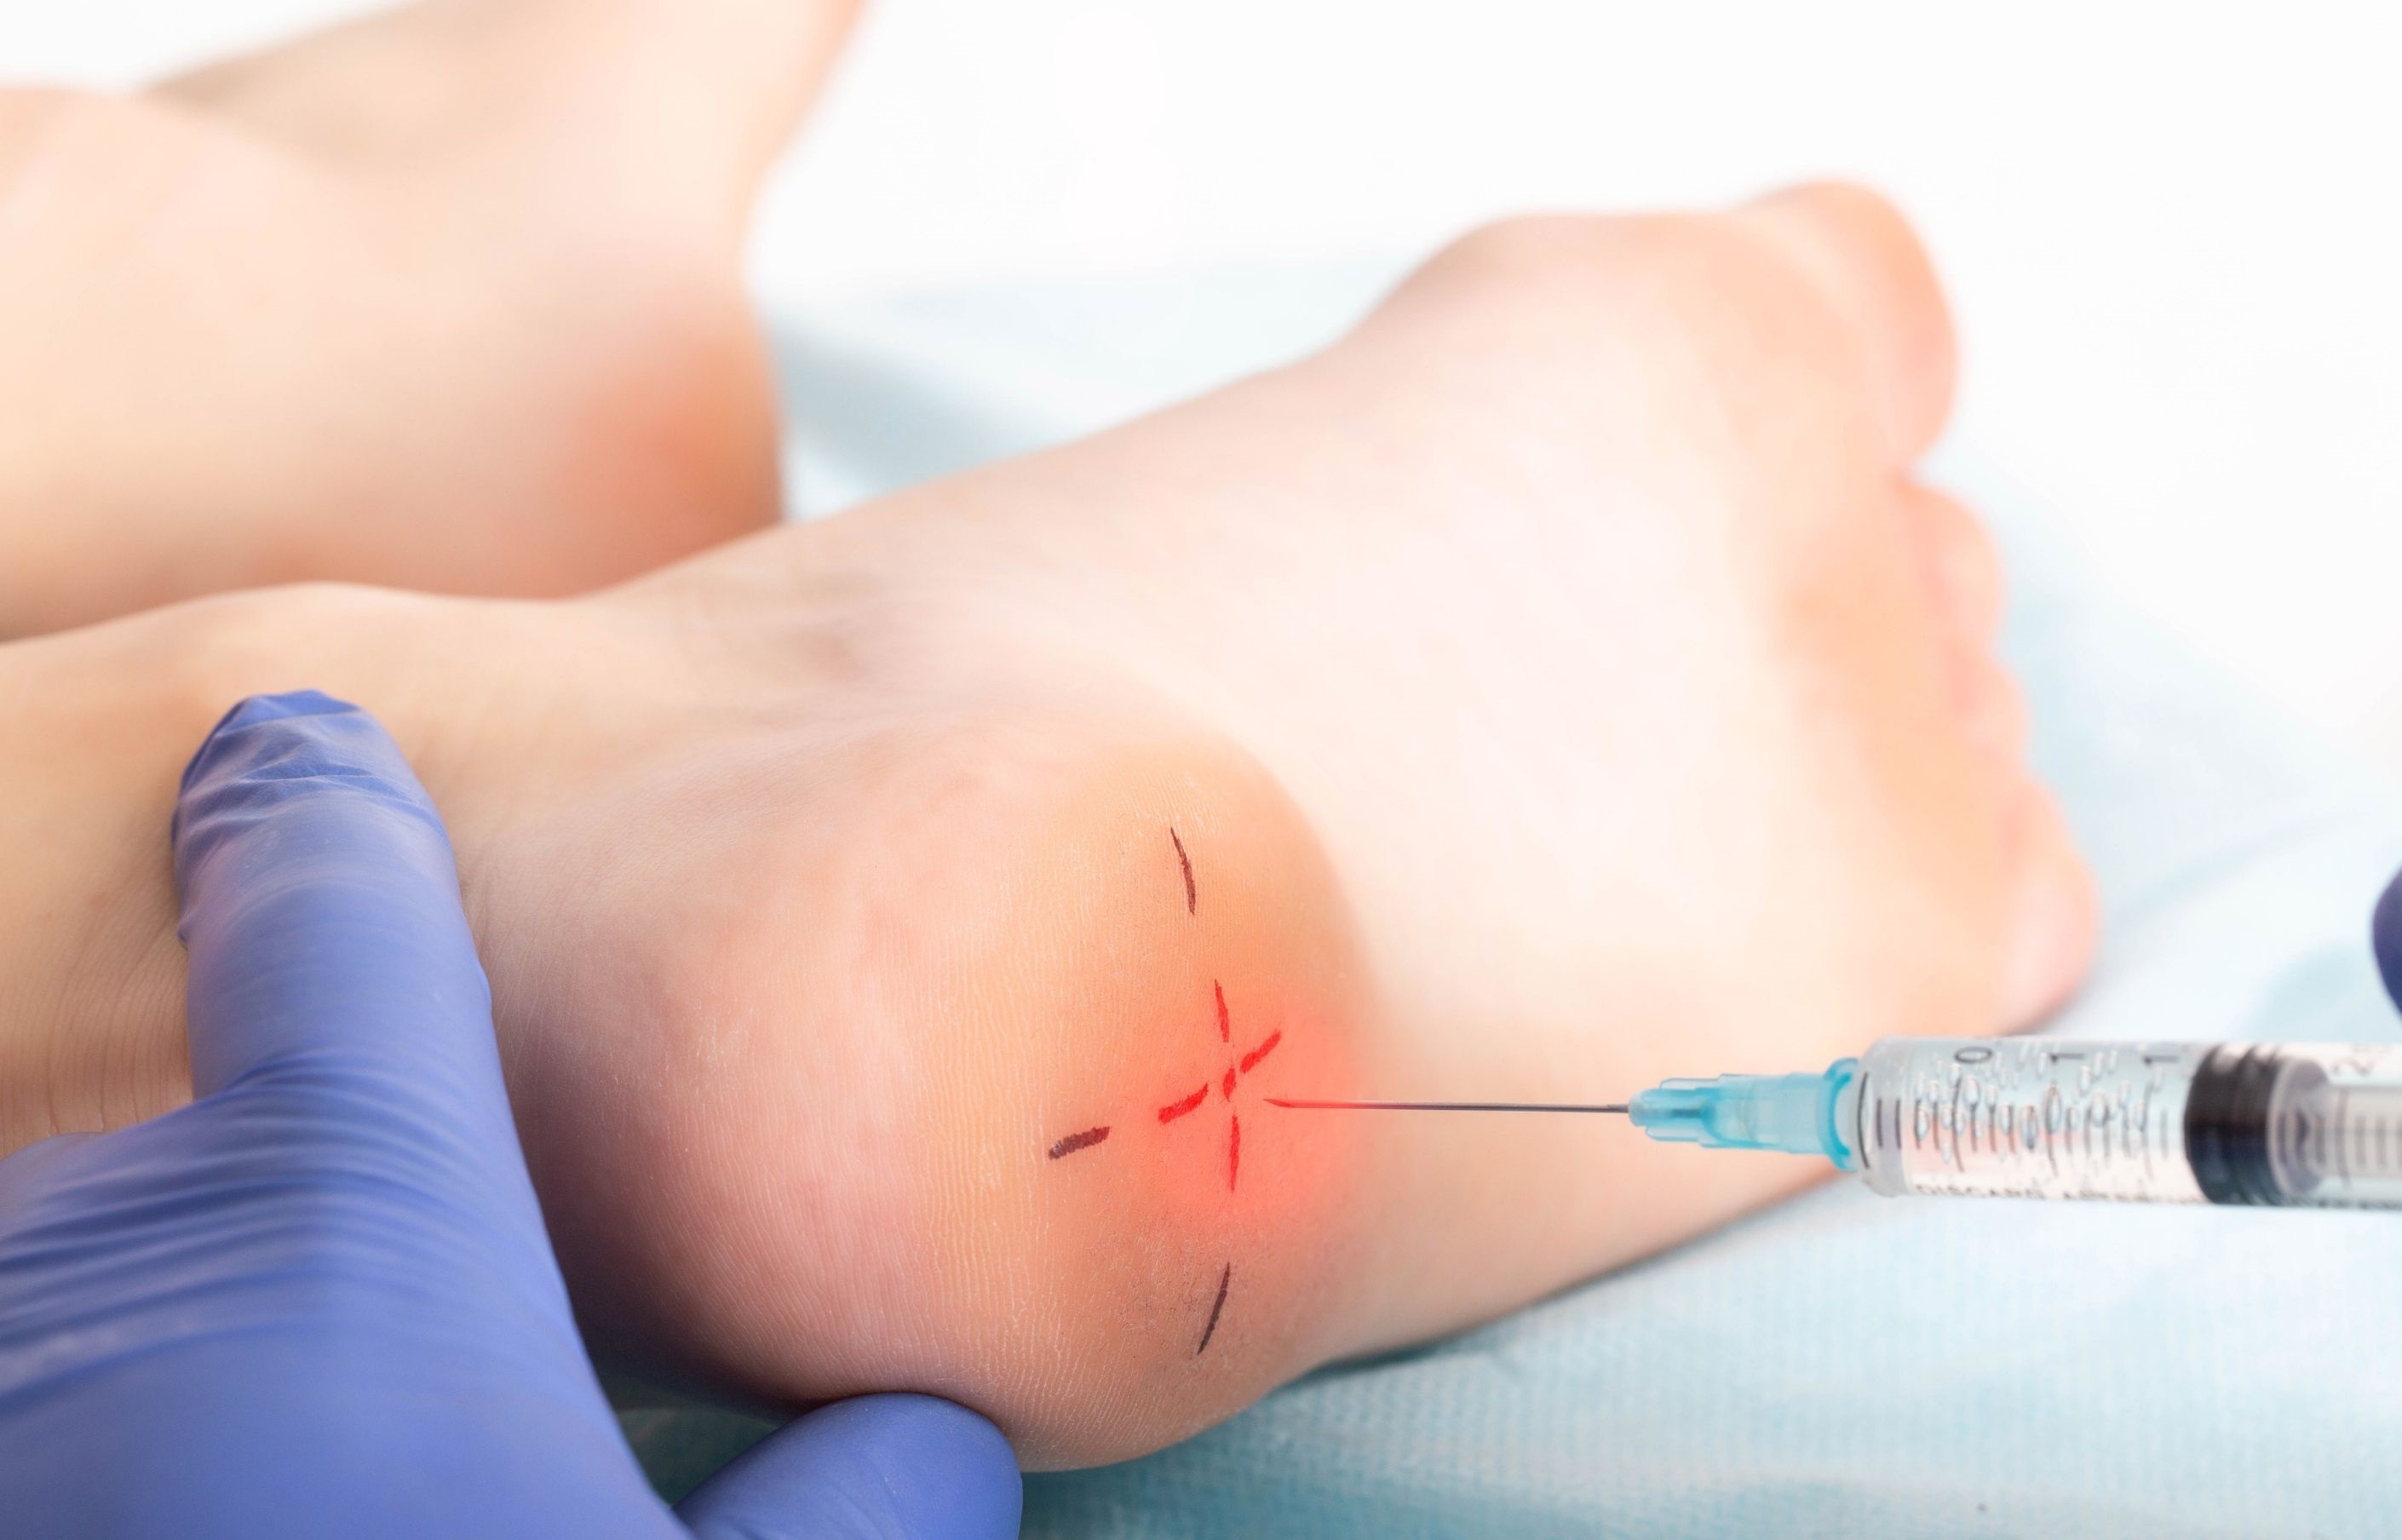 Infiltration de cortisone ciblée au niveau du talon d'un pied